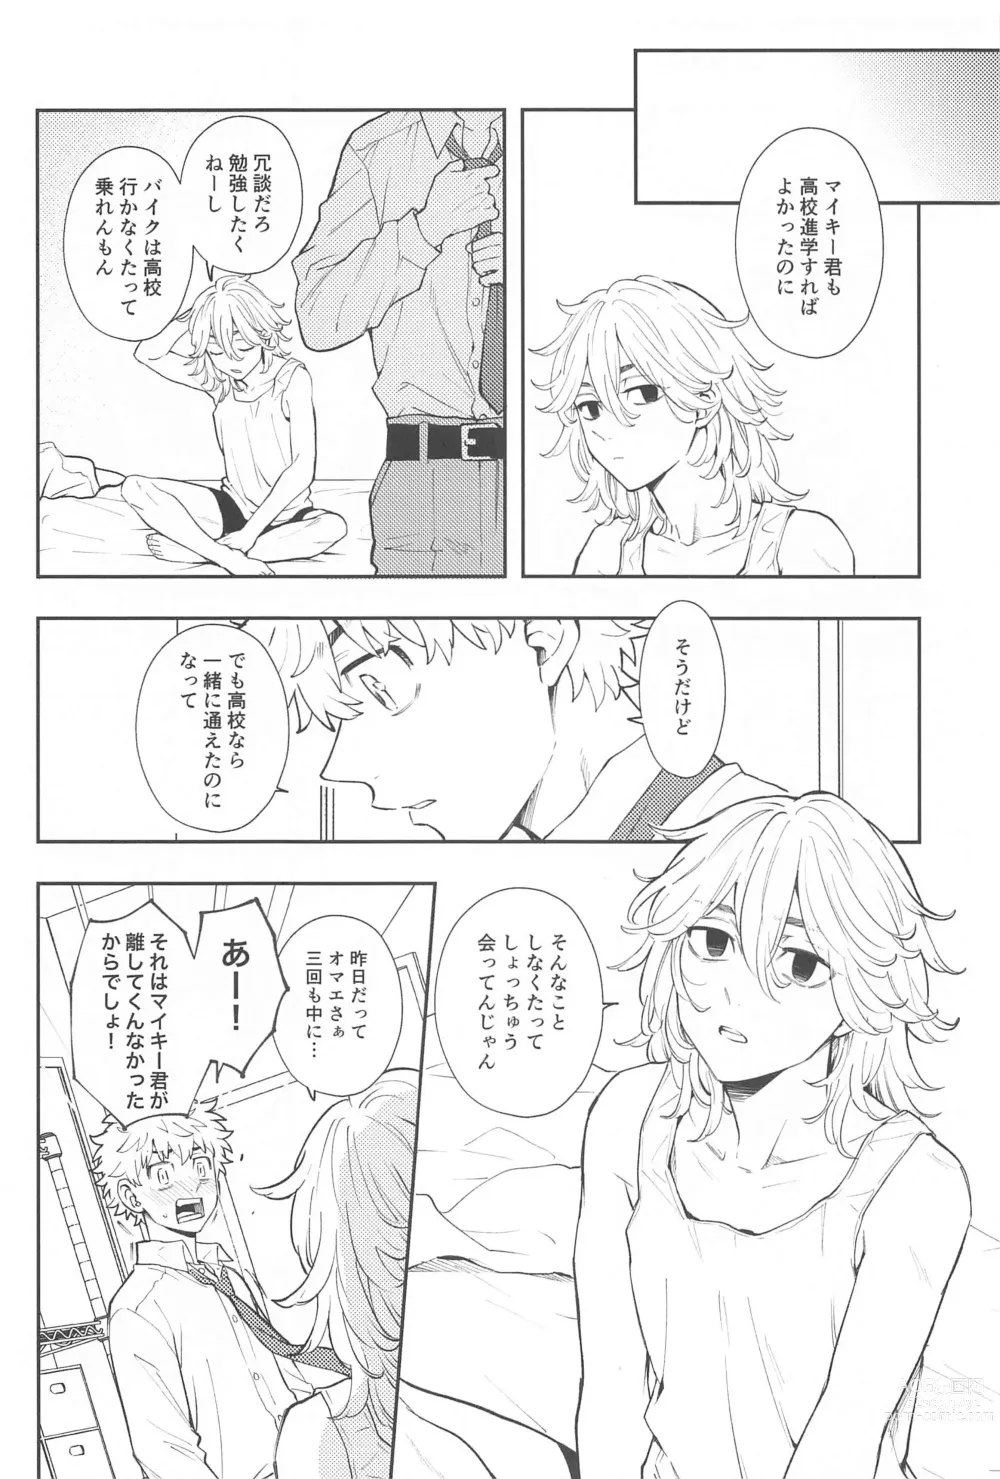 Page 3 of doujinshi Kyou wa Osoroi de!